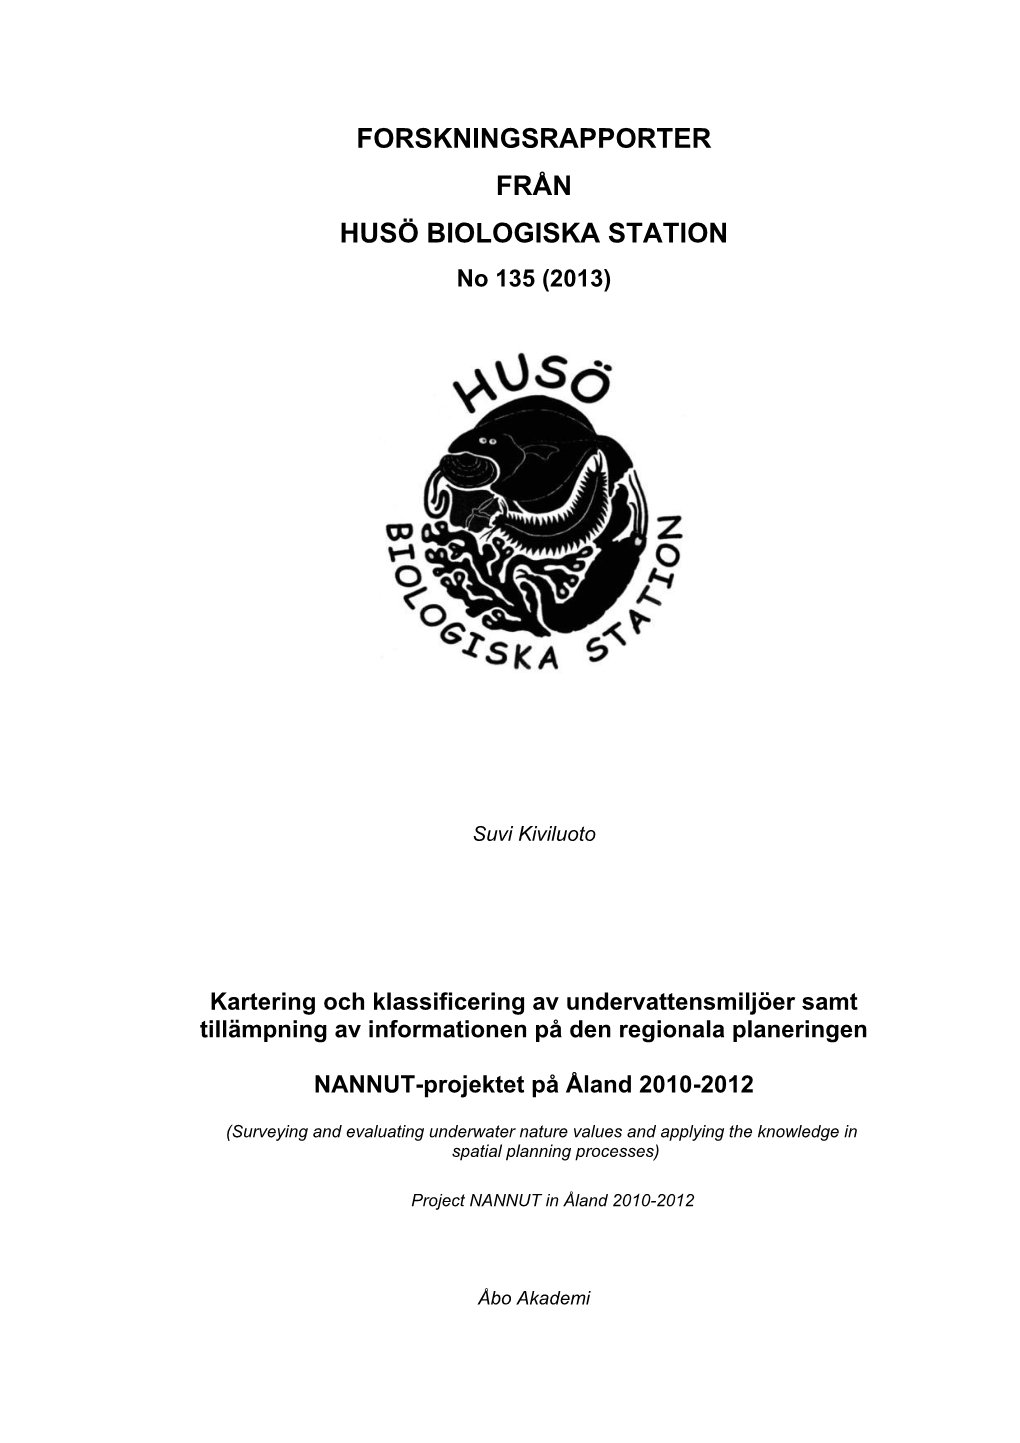 FORSKNINGSRAPPORTER FRÅN HUSÖ BIOLOGISKA STATION No 135 (2013)